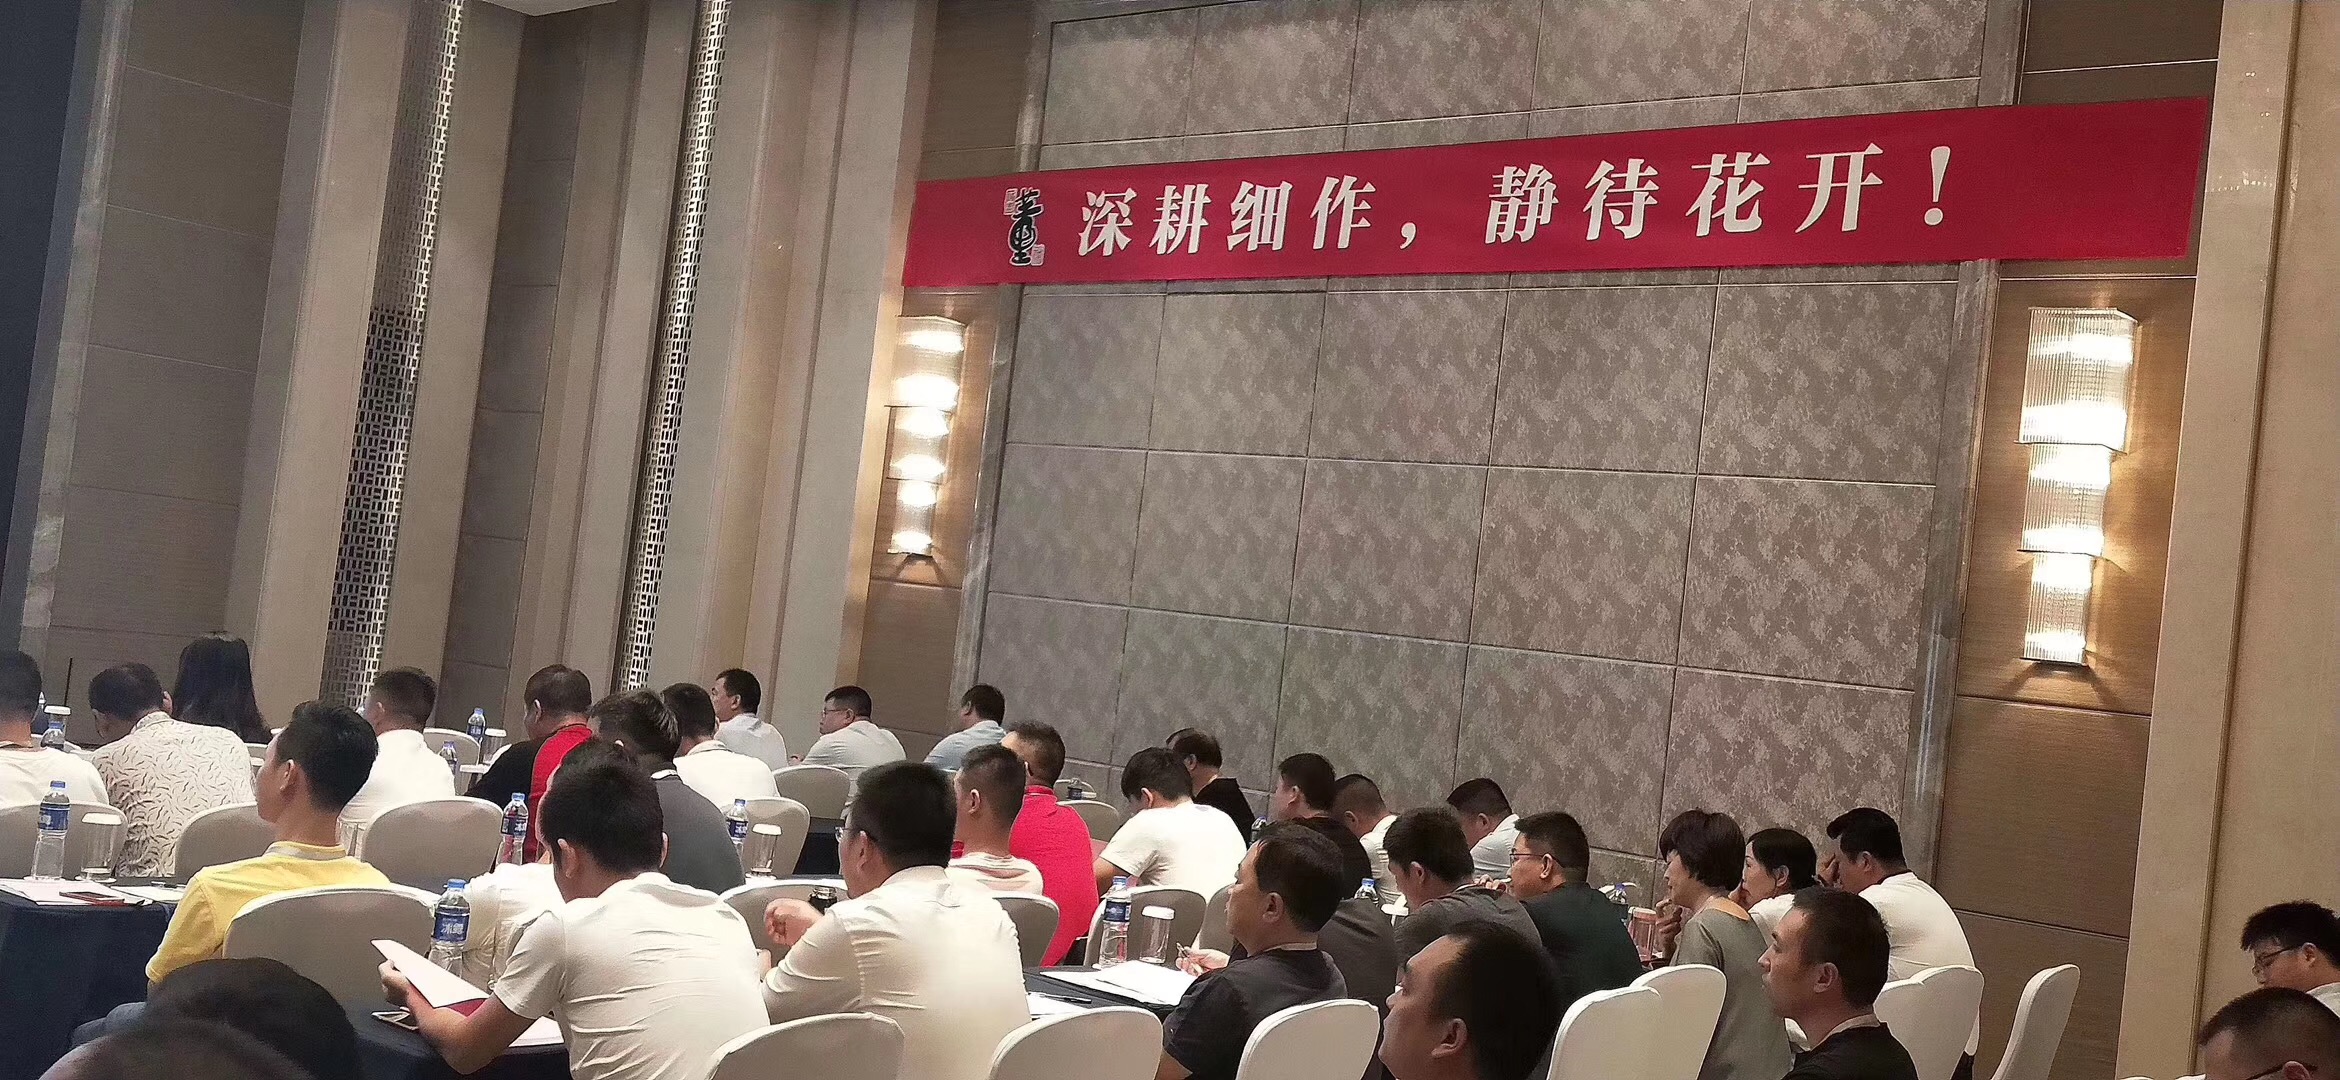 贵州董酒华南区域核心经销商培训交流会议